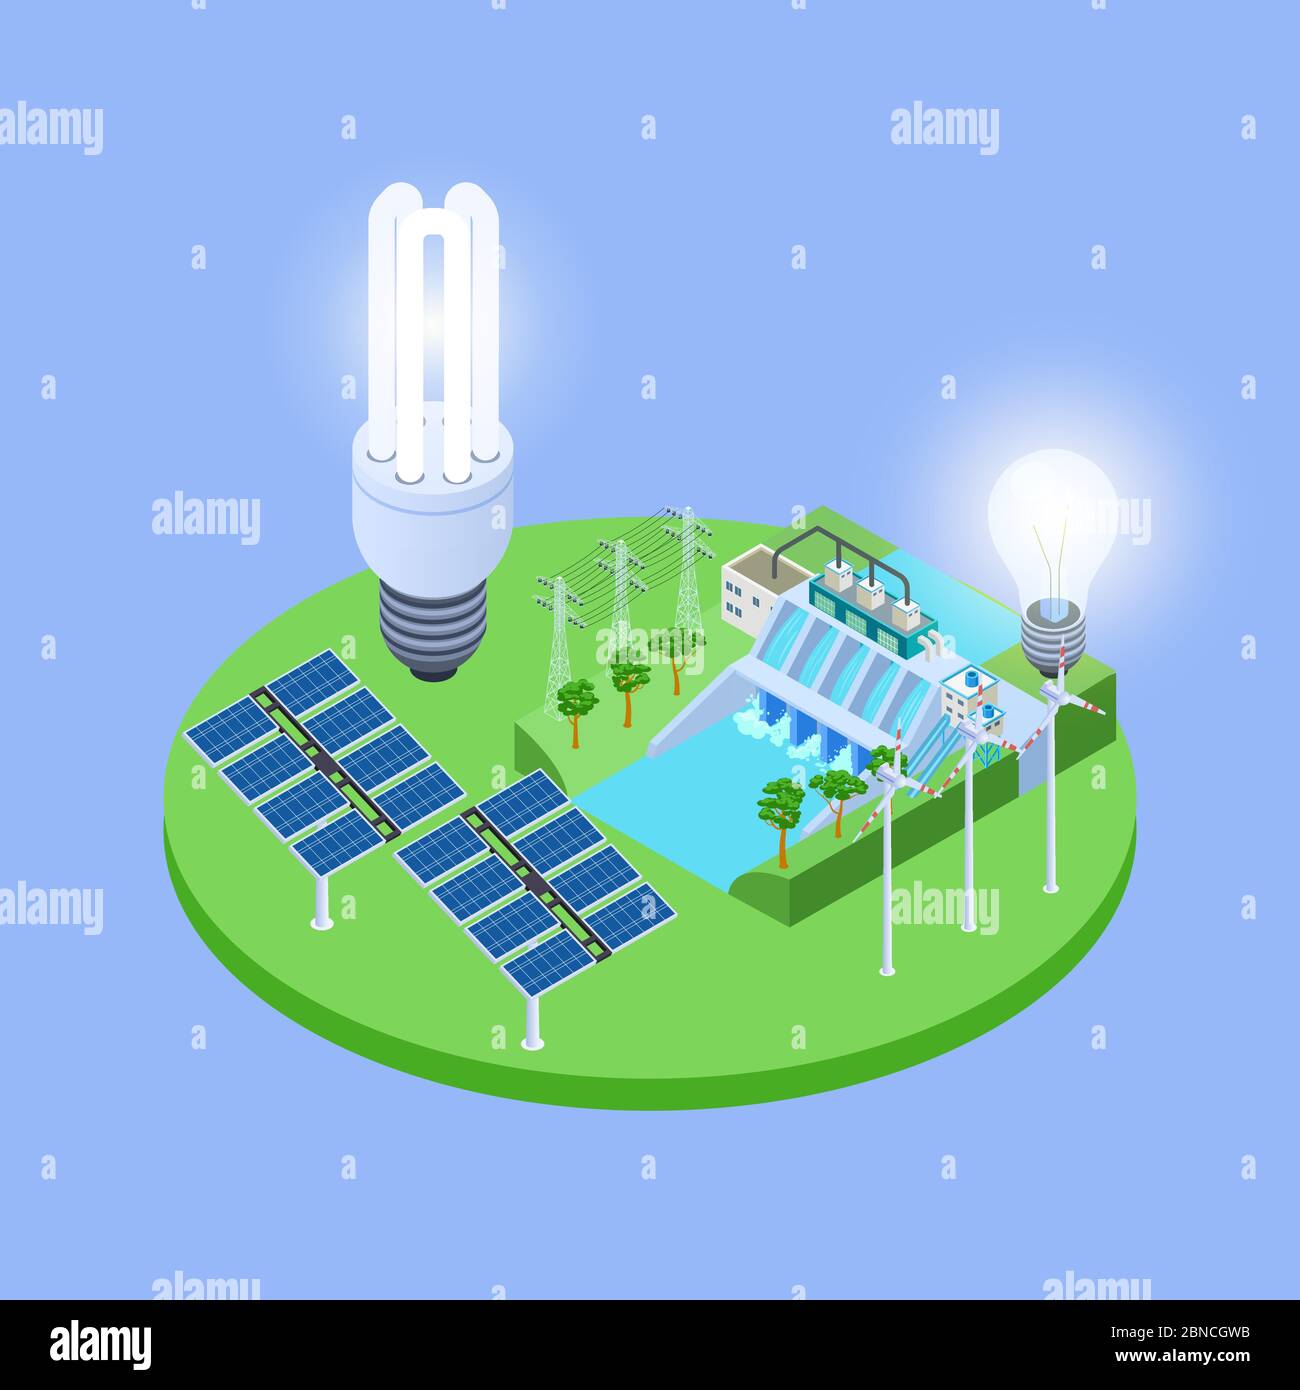 Concetto vettoriale isometrico energetico ecologico con pannelli solari, lampadine a luci ecologiche, illustrazione della stazione idroelettrica Illustrazione Vettoriale